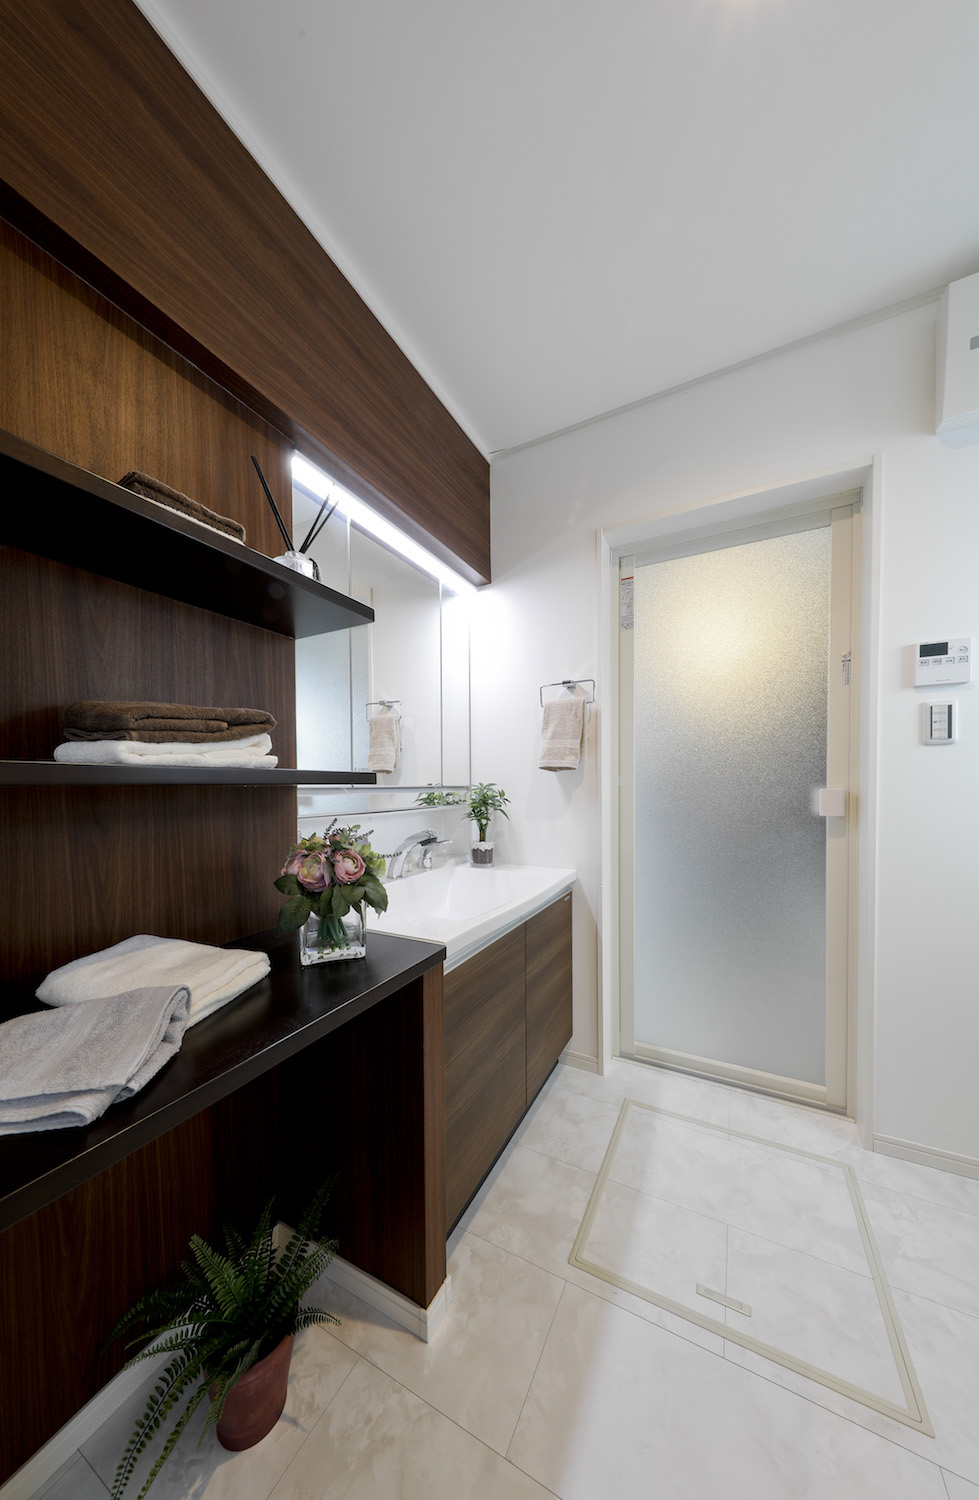 ホテルのように素敵な洗面室をつくりましょう 大阪の新築分譲 注文住宅 野村工務店 野村マガジン 株式会社 野村工務店